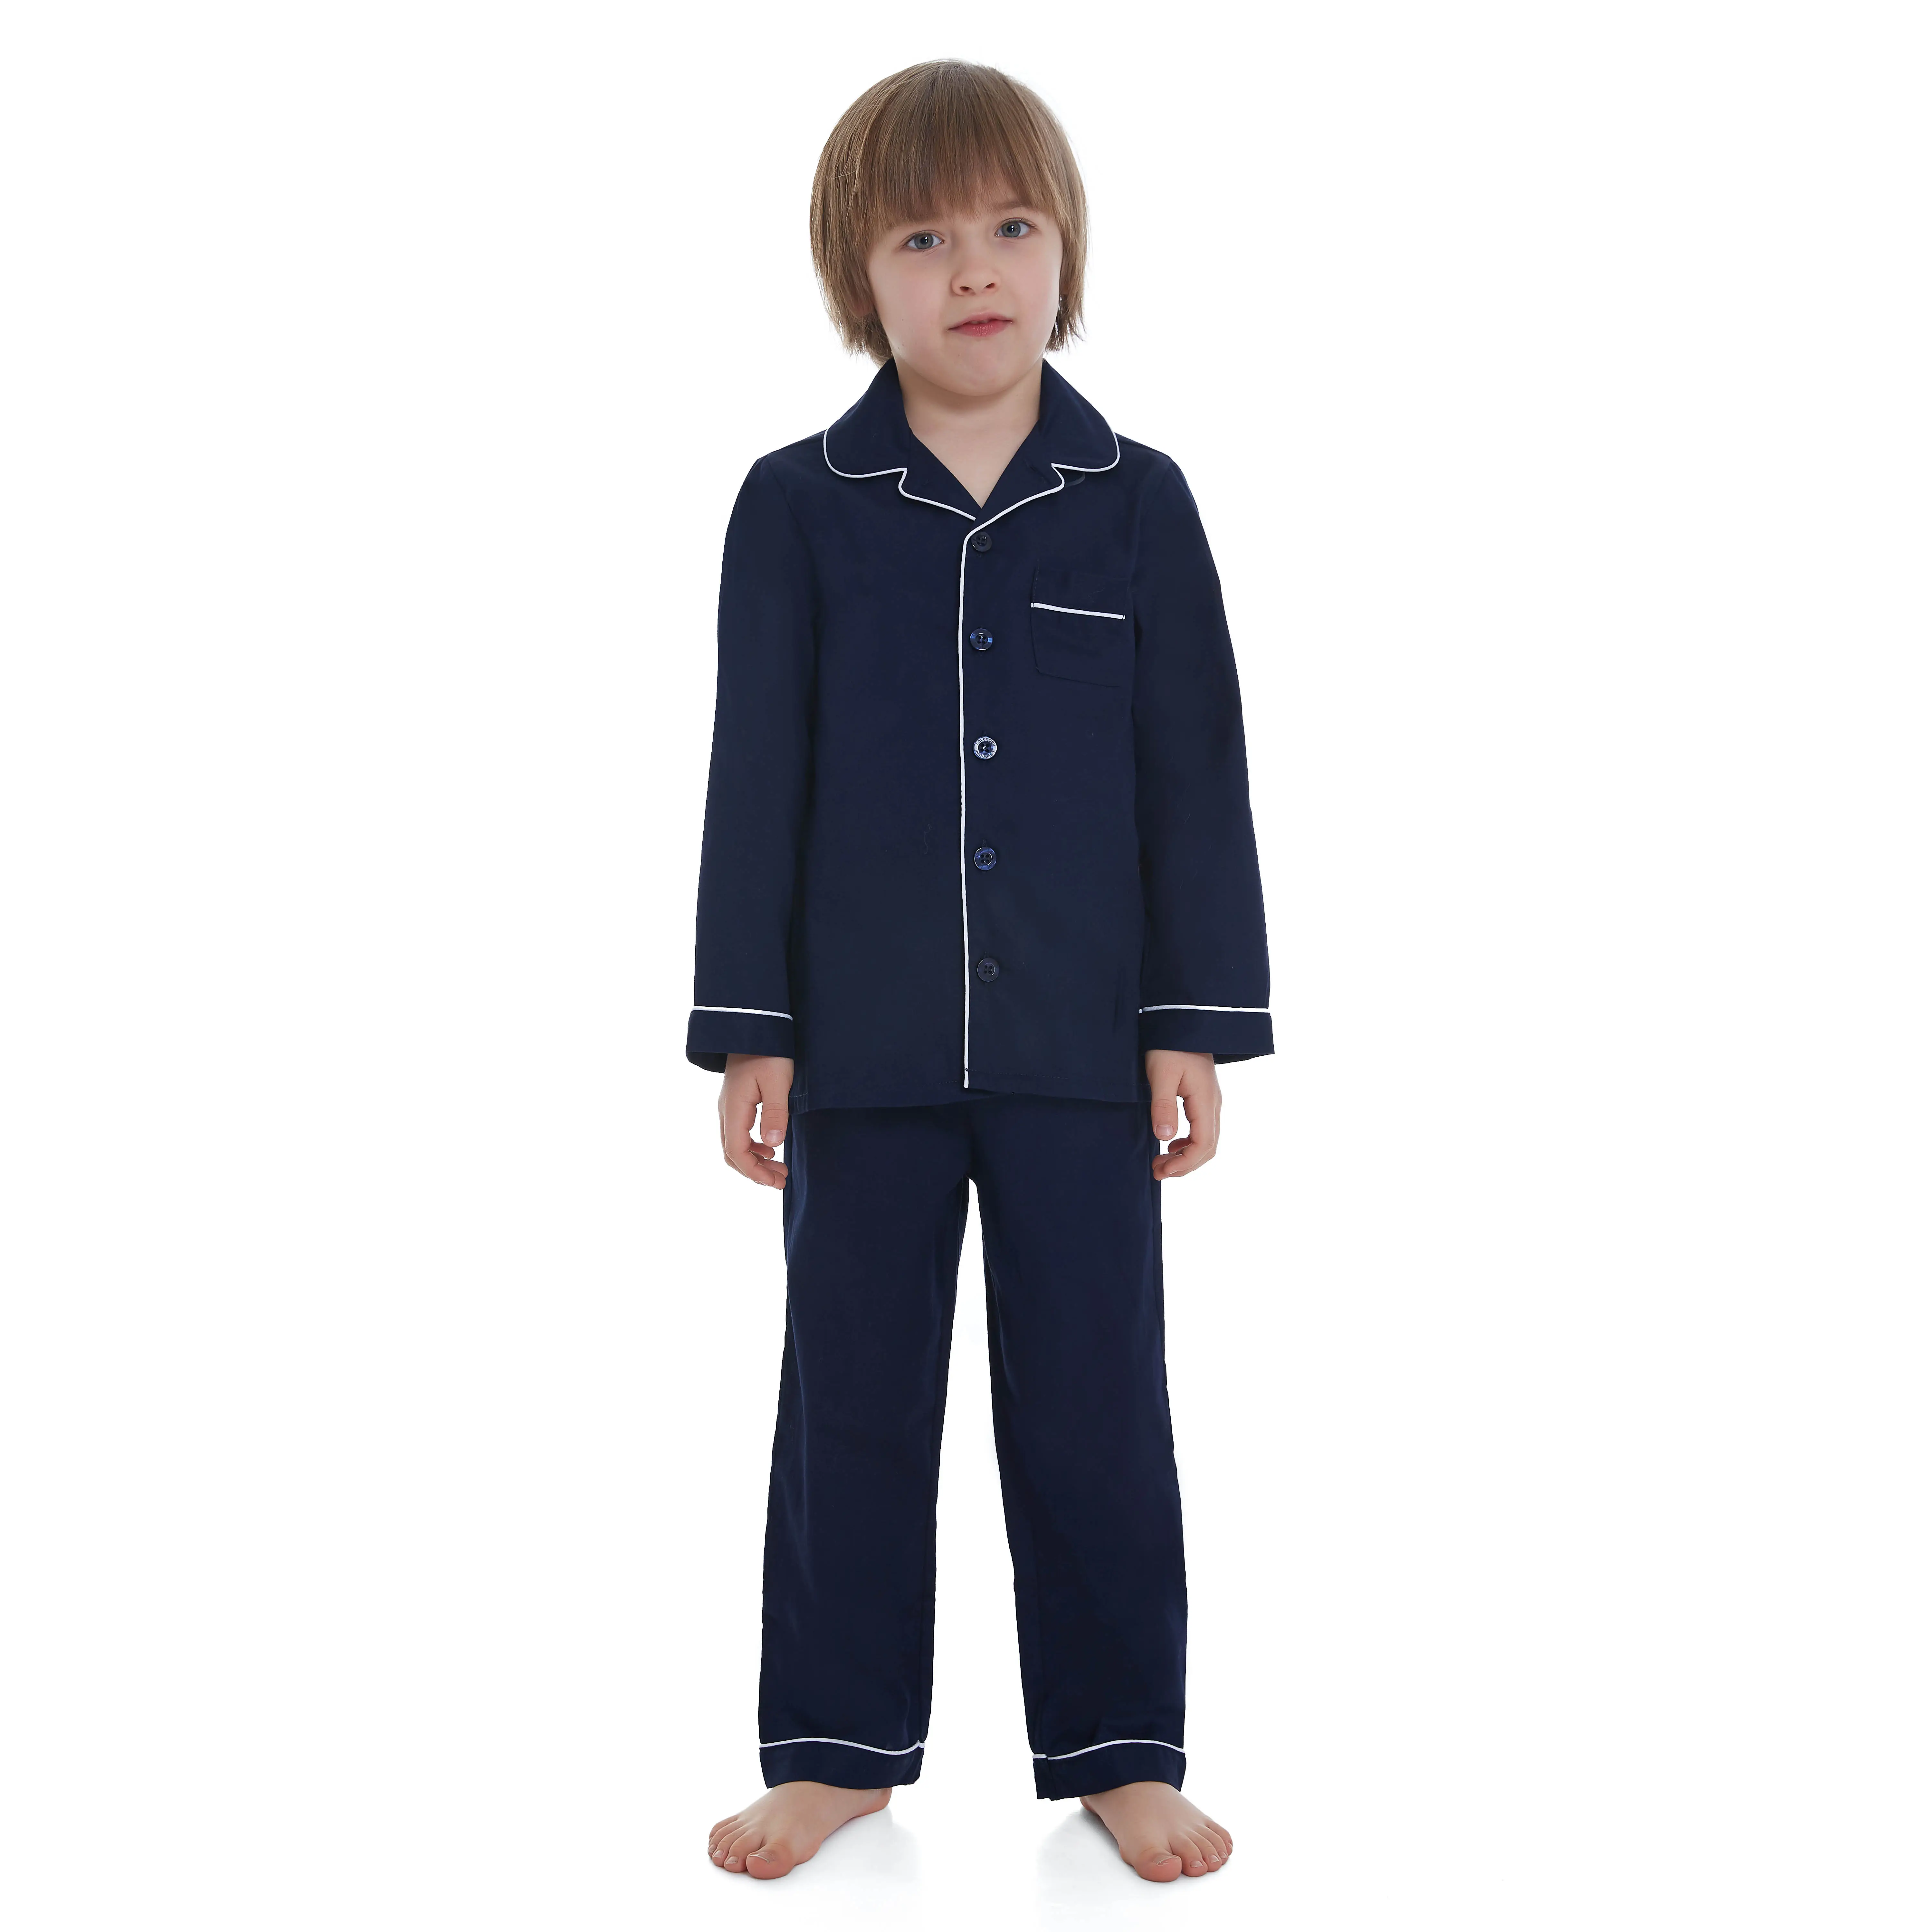 Girls Boys 100% Cotton Long Sleeve Pajama Set, Pajamas for Kids (Size 2 Toddler-14 Years)